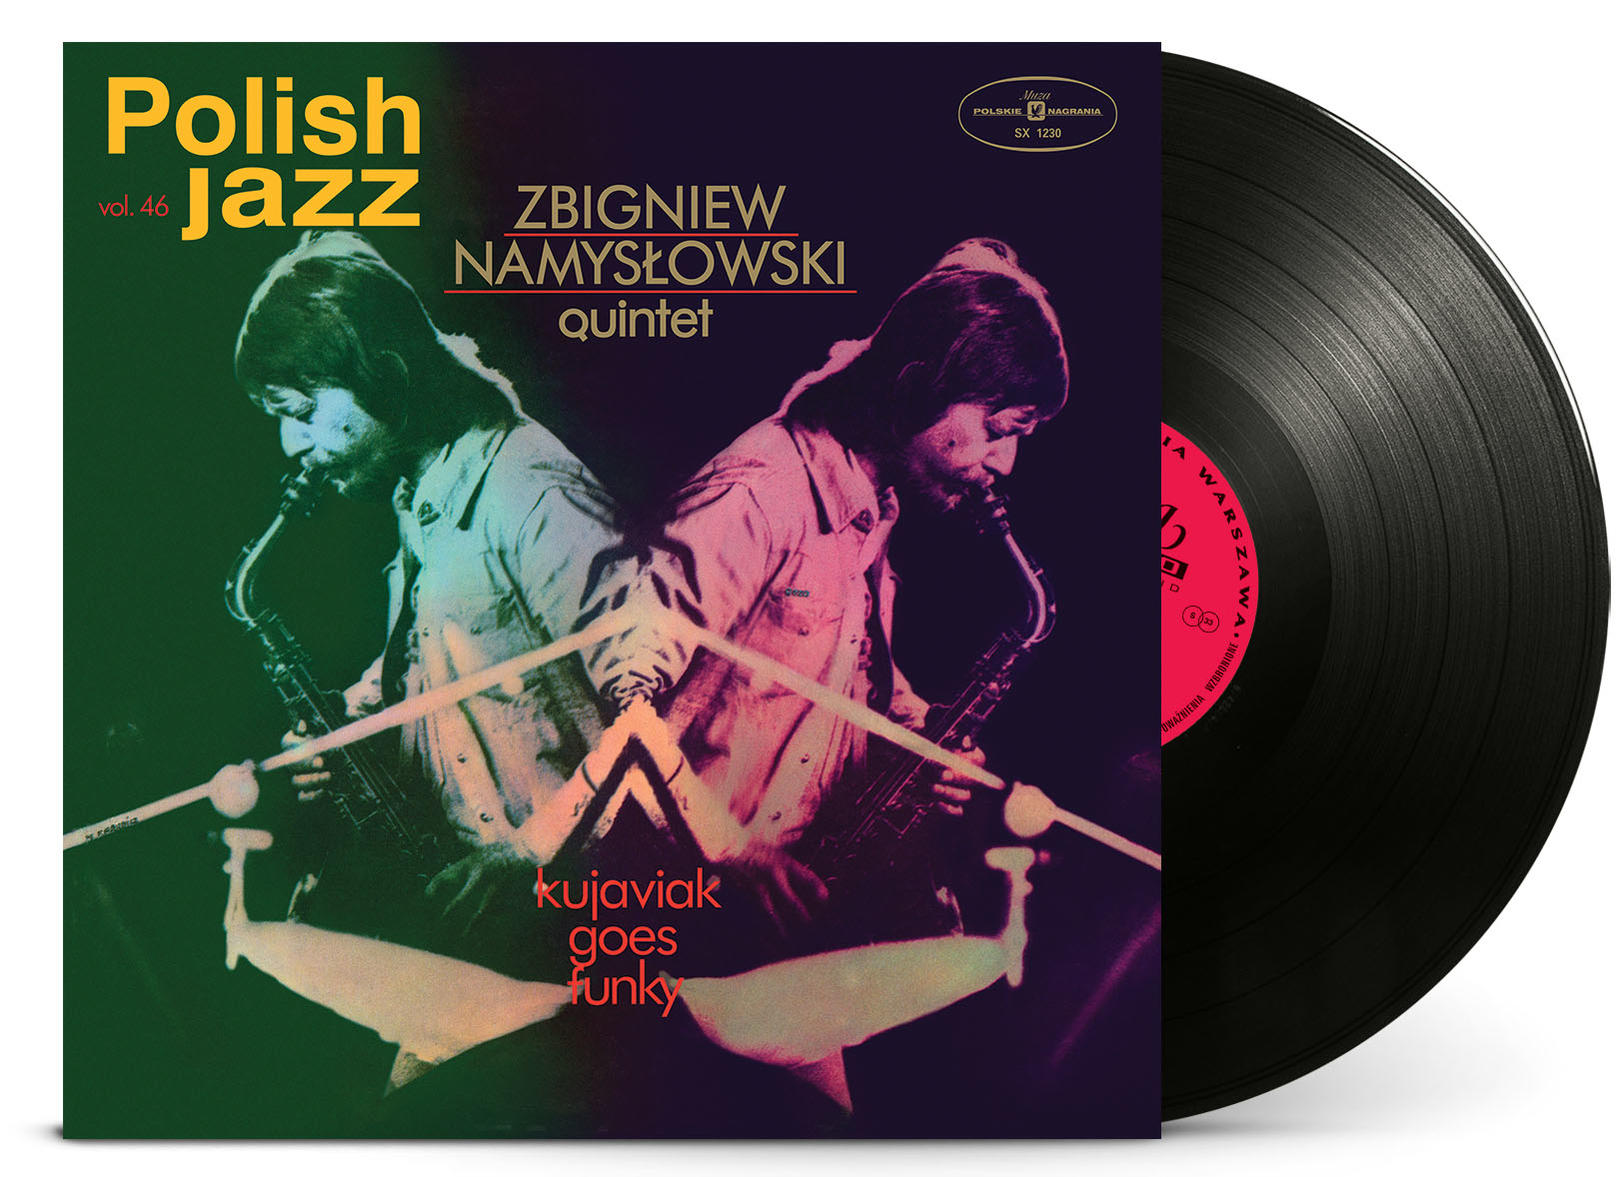 Zbigniew Quintet Namyslowski - Goes Funky Kujaviak - (Vinyl)